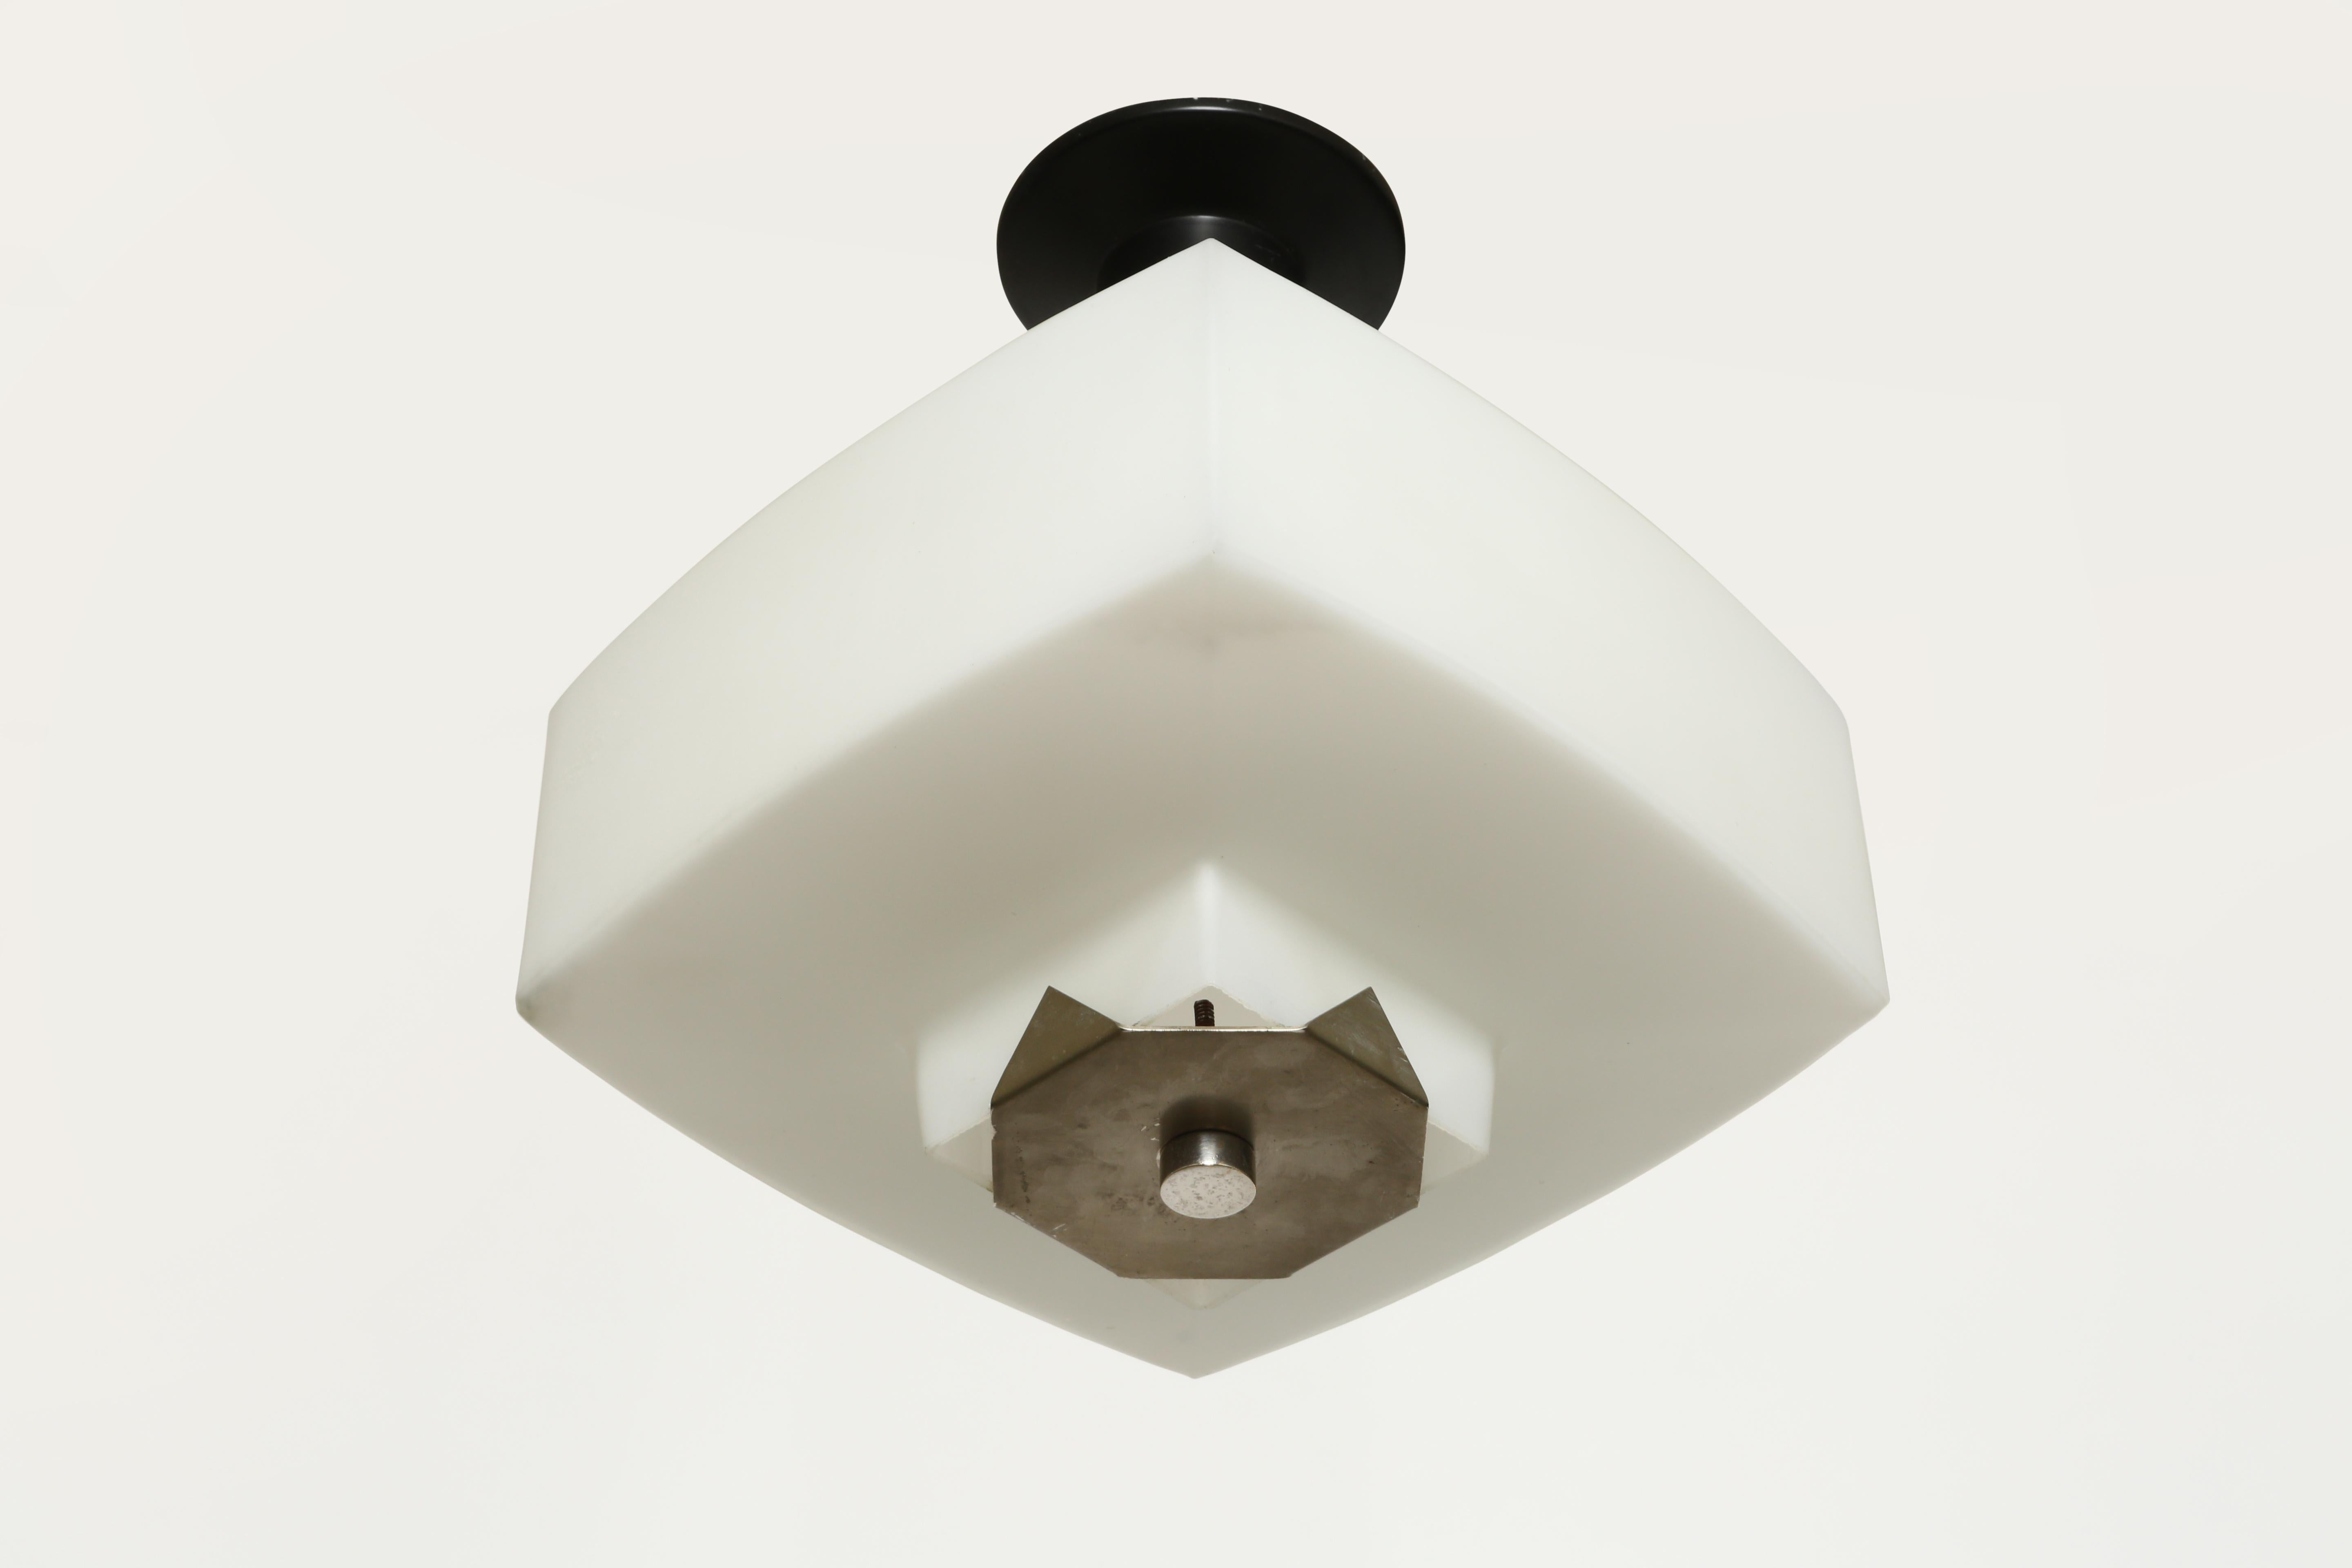 Mid-20th Century Elio Monesi for Arredoluce Ceiling Pendant